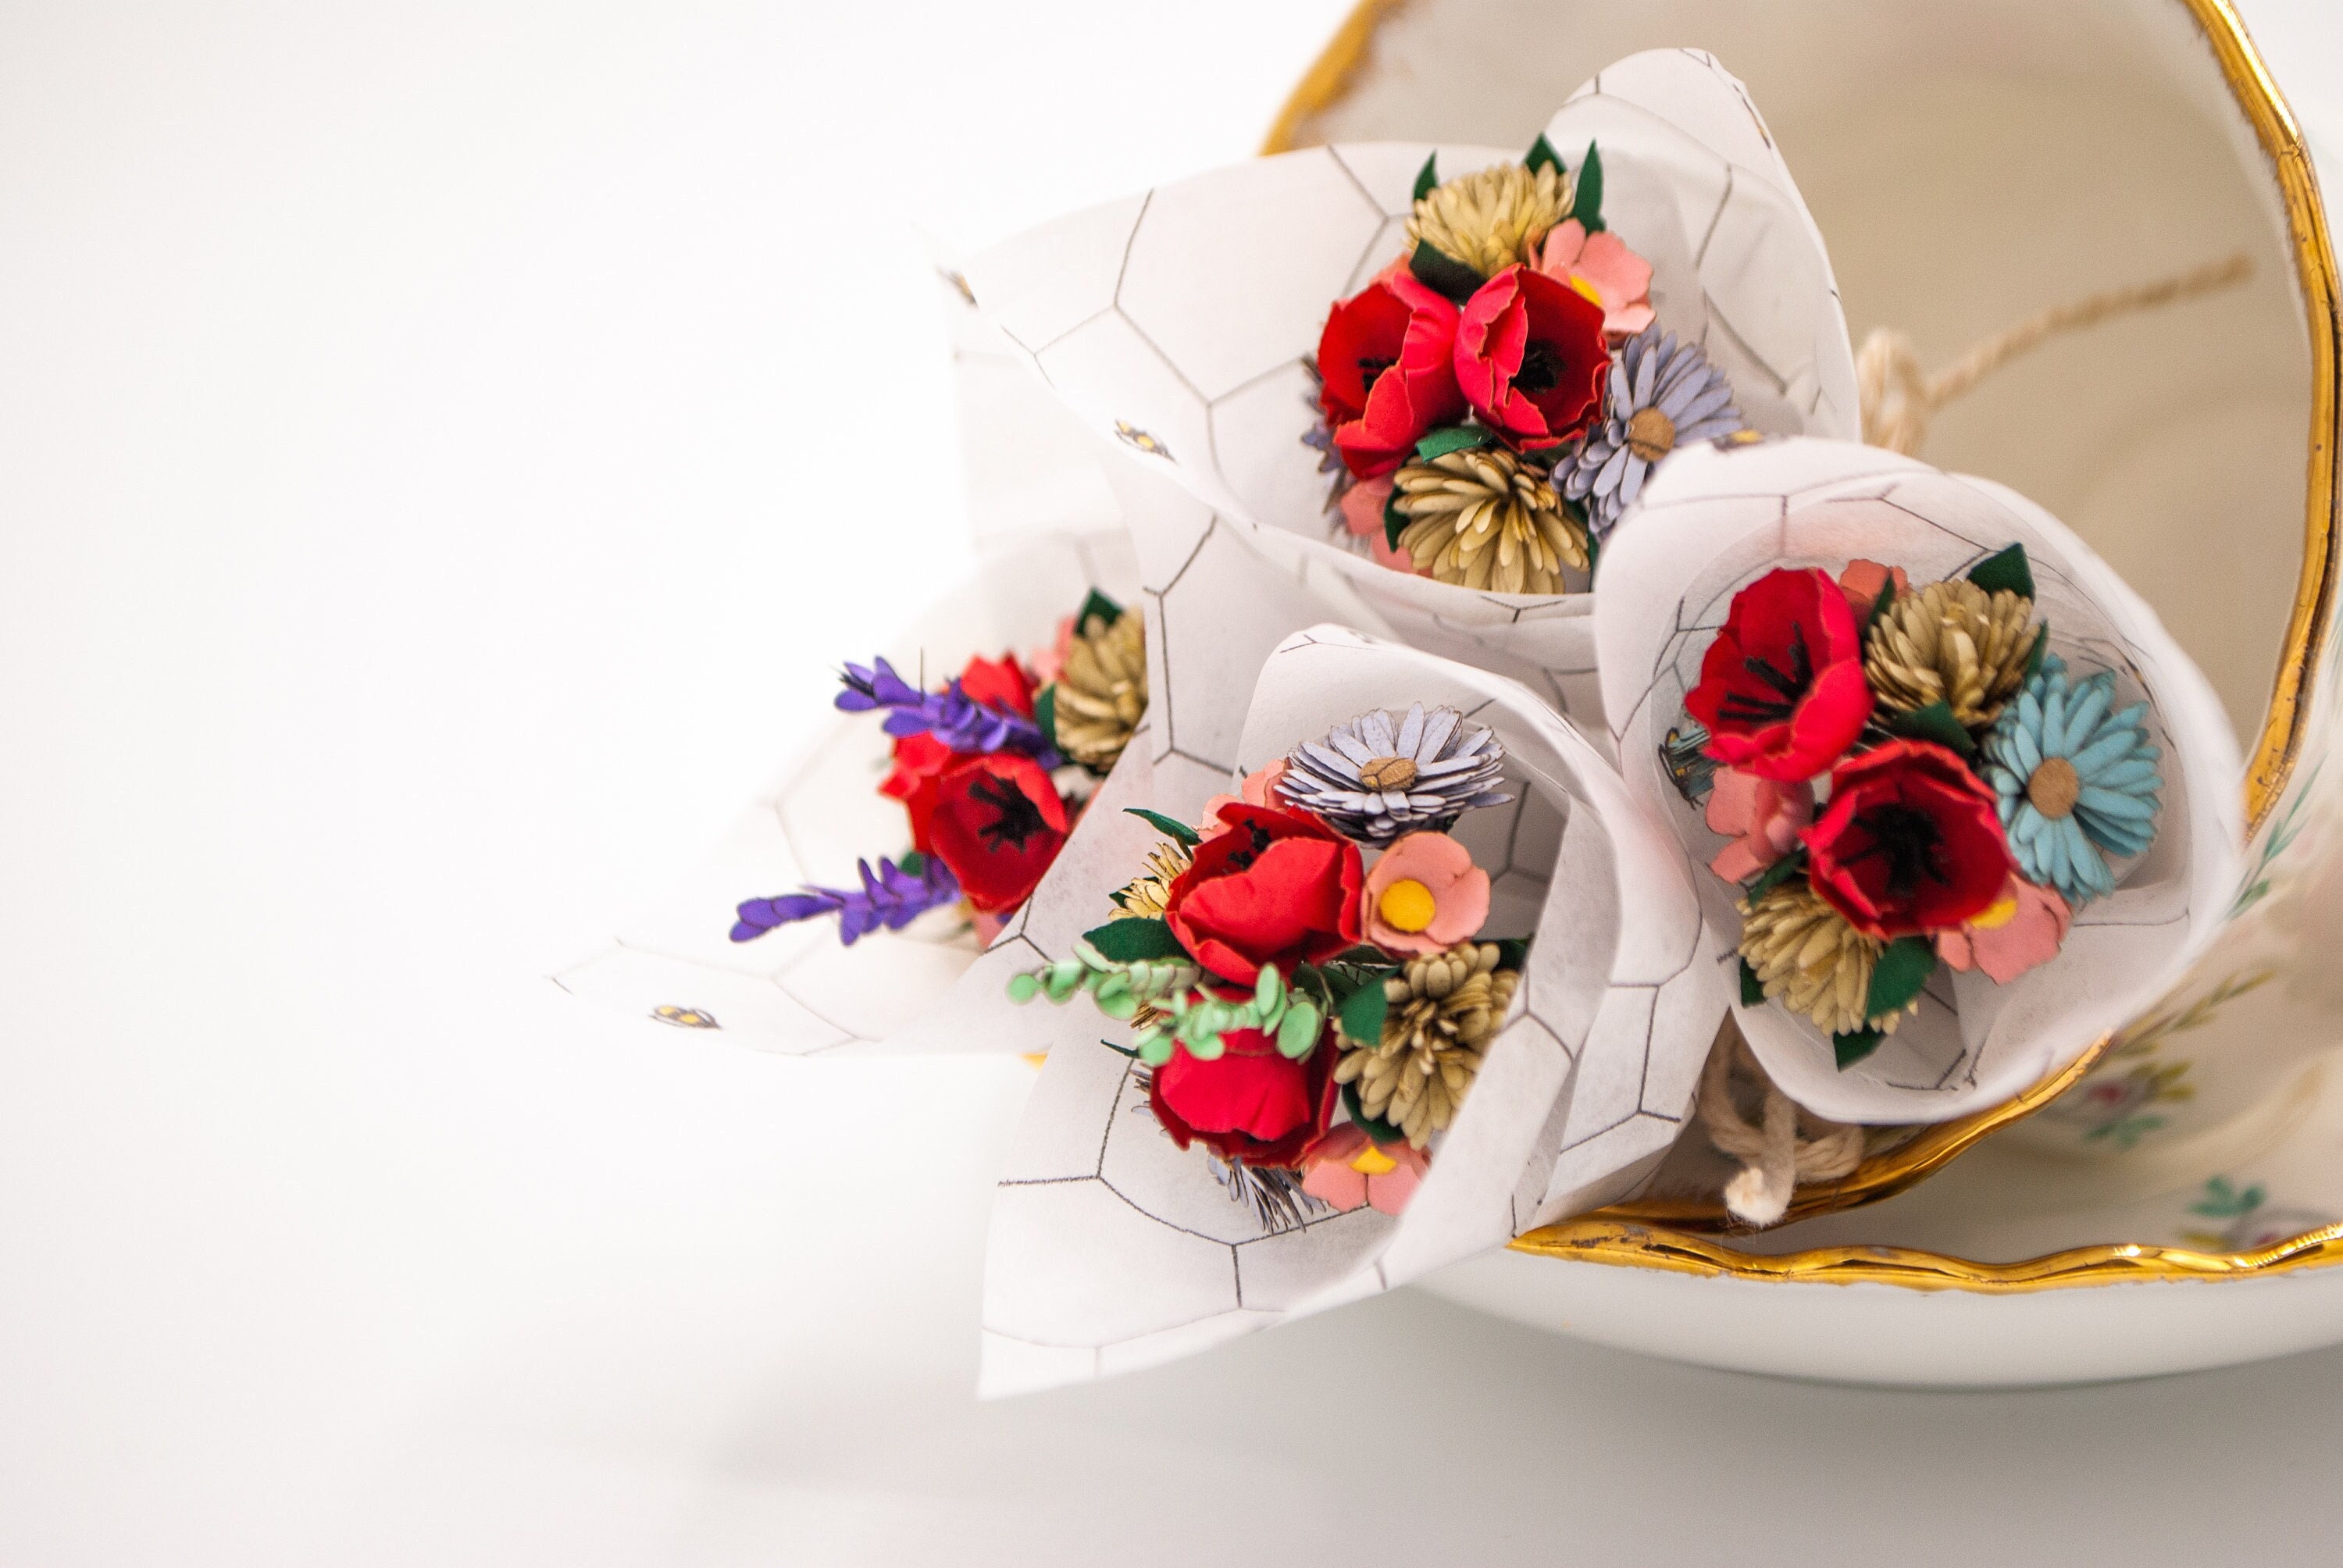 4pcs Floral Tape Florist Wraps DIY Flower Supplies for Bouquet Stem Wrapping, Size: 3.15 x 3.15 x 1.97